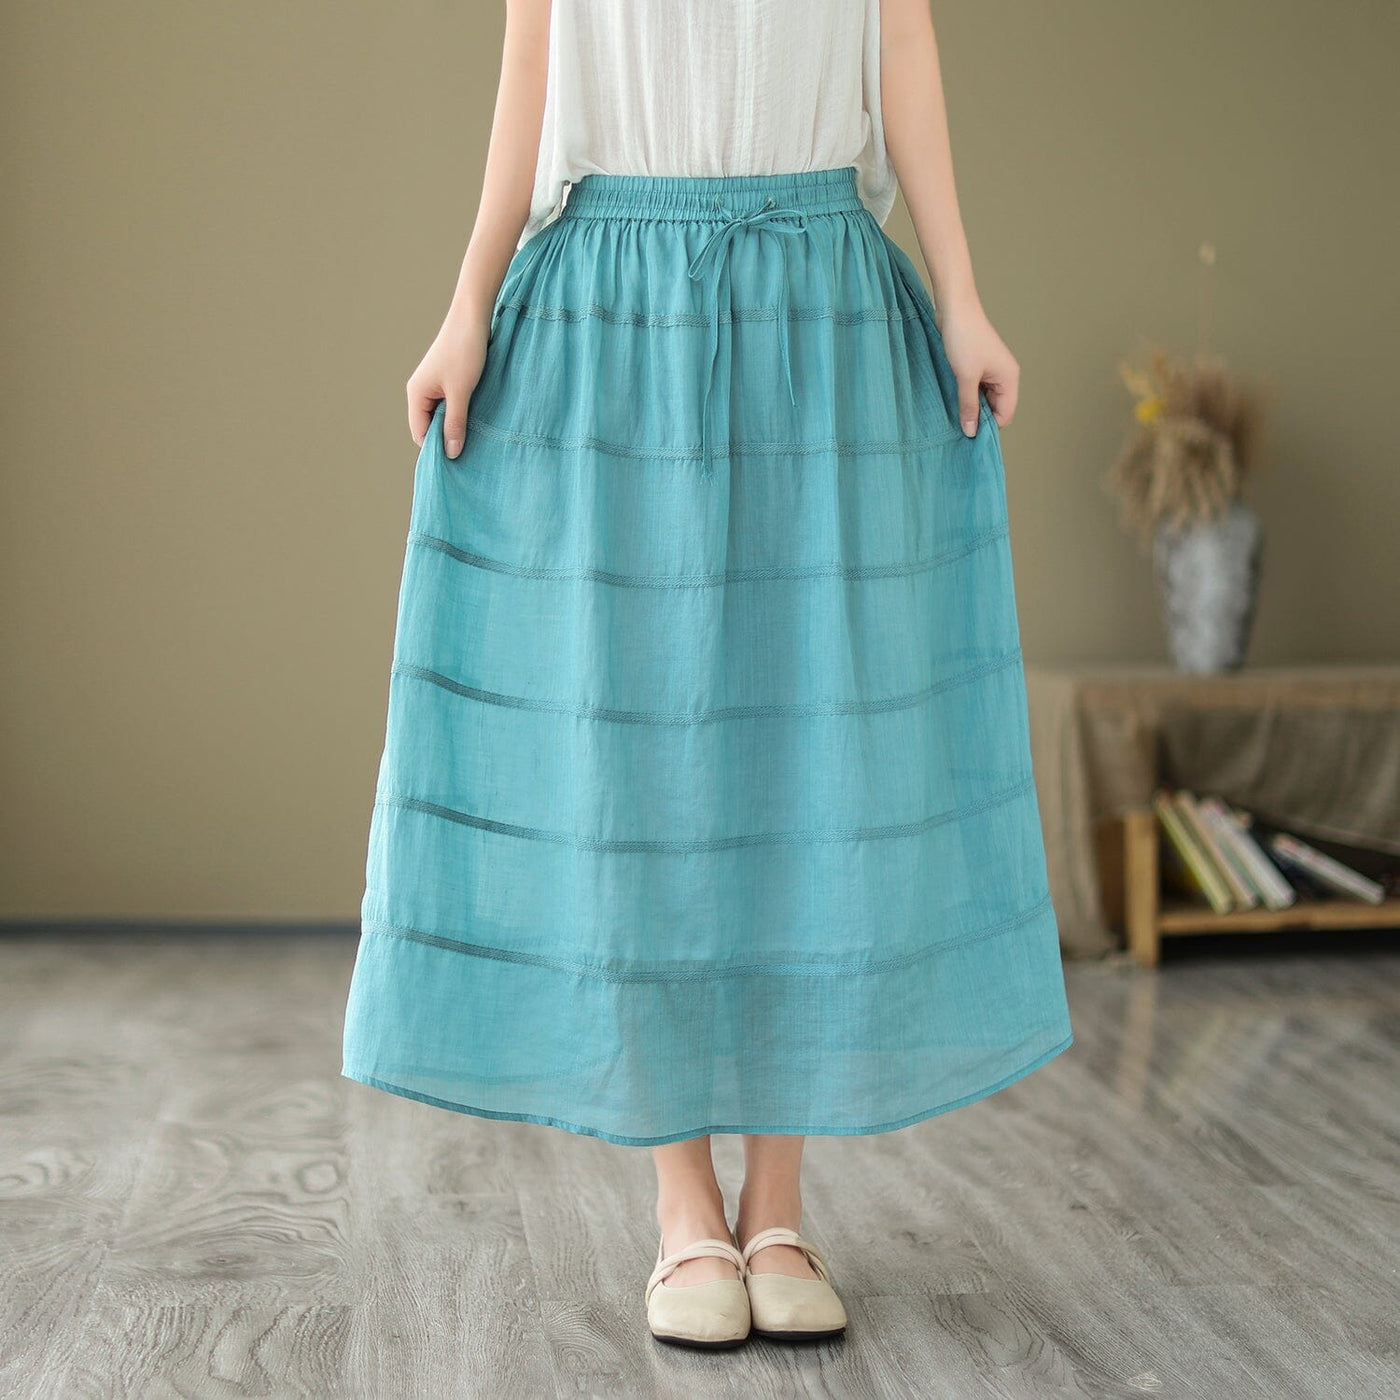 Women Summer Casual Linen A-Line Skirt